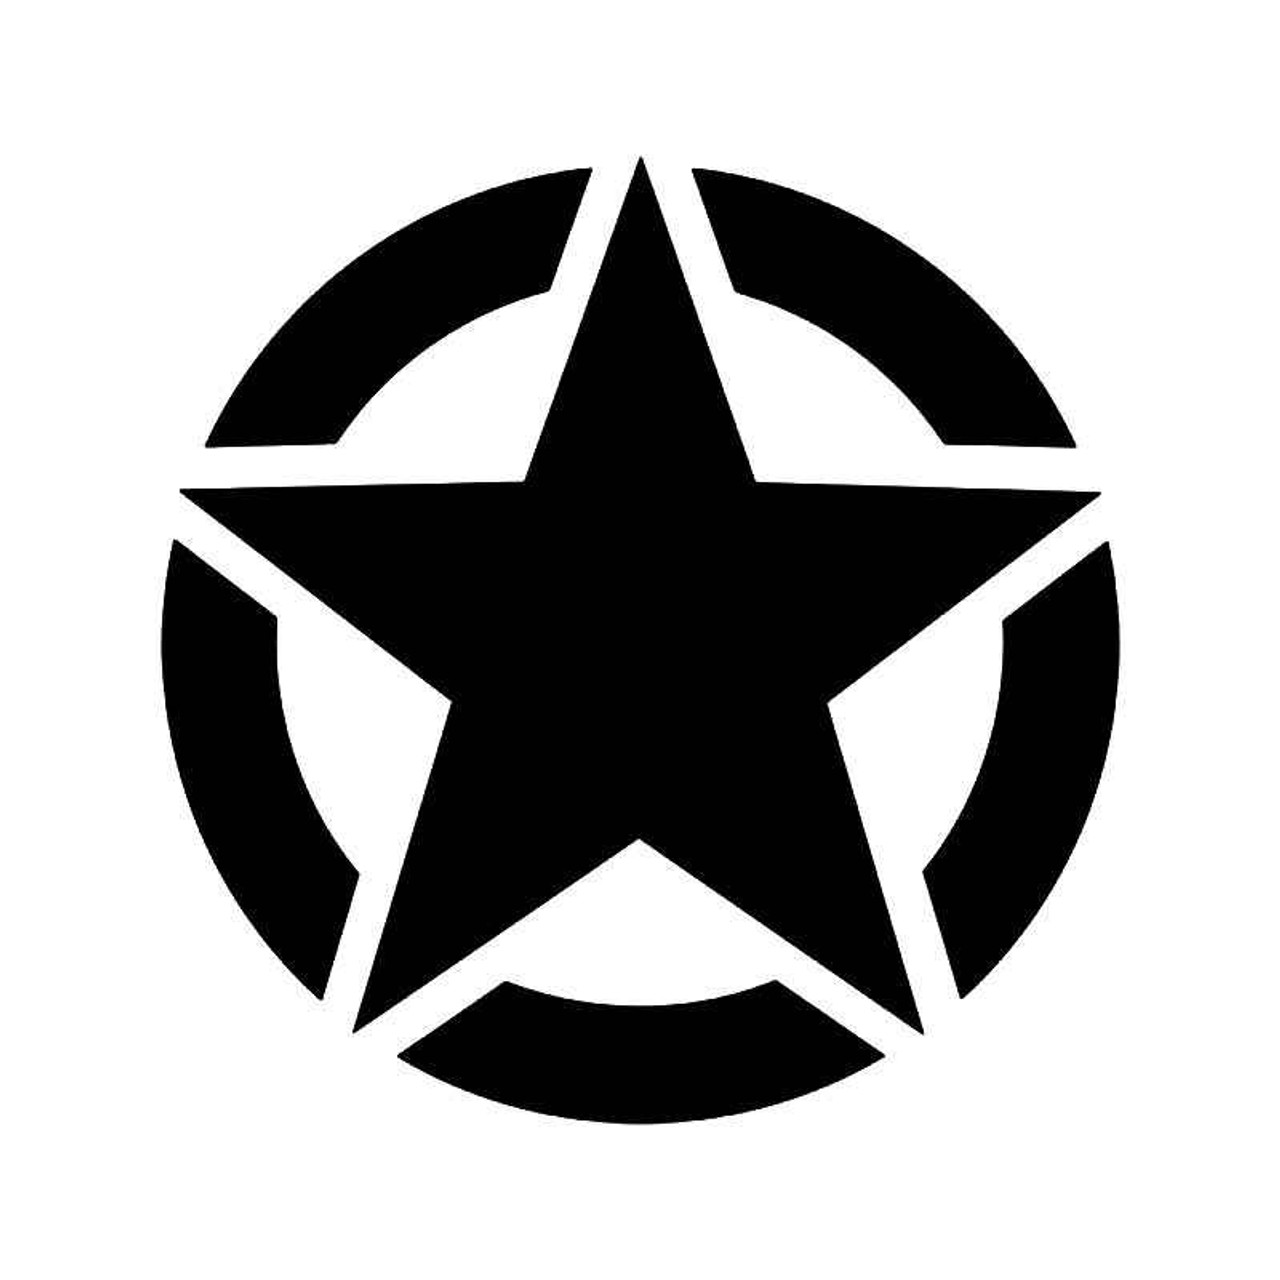 Ww2 Army Symbol